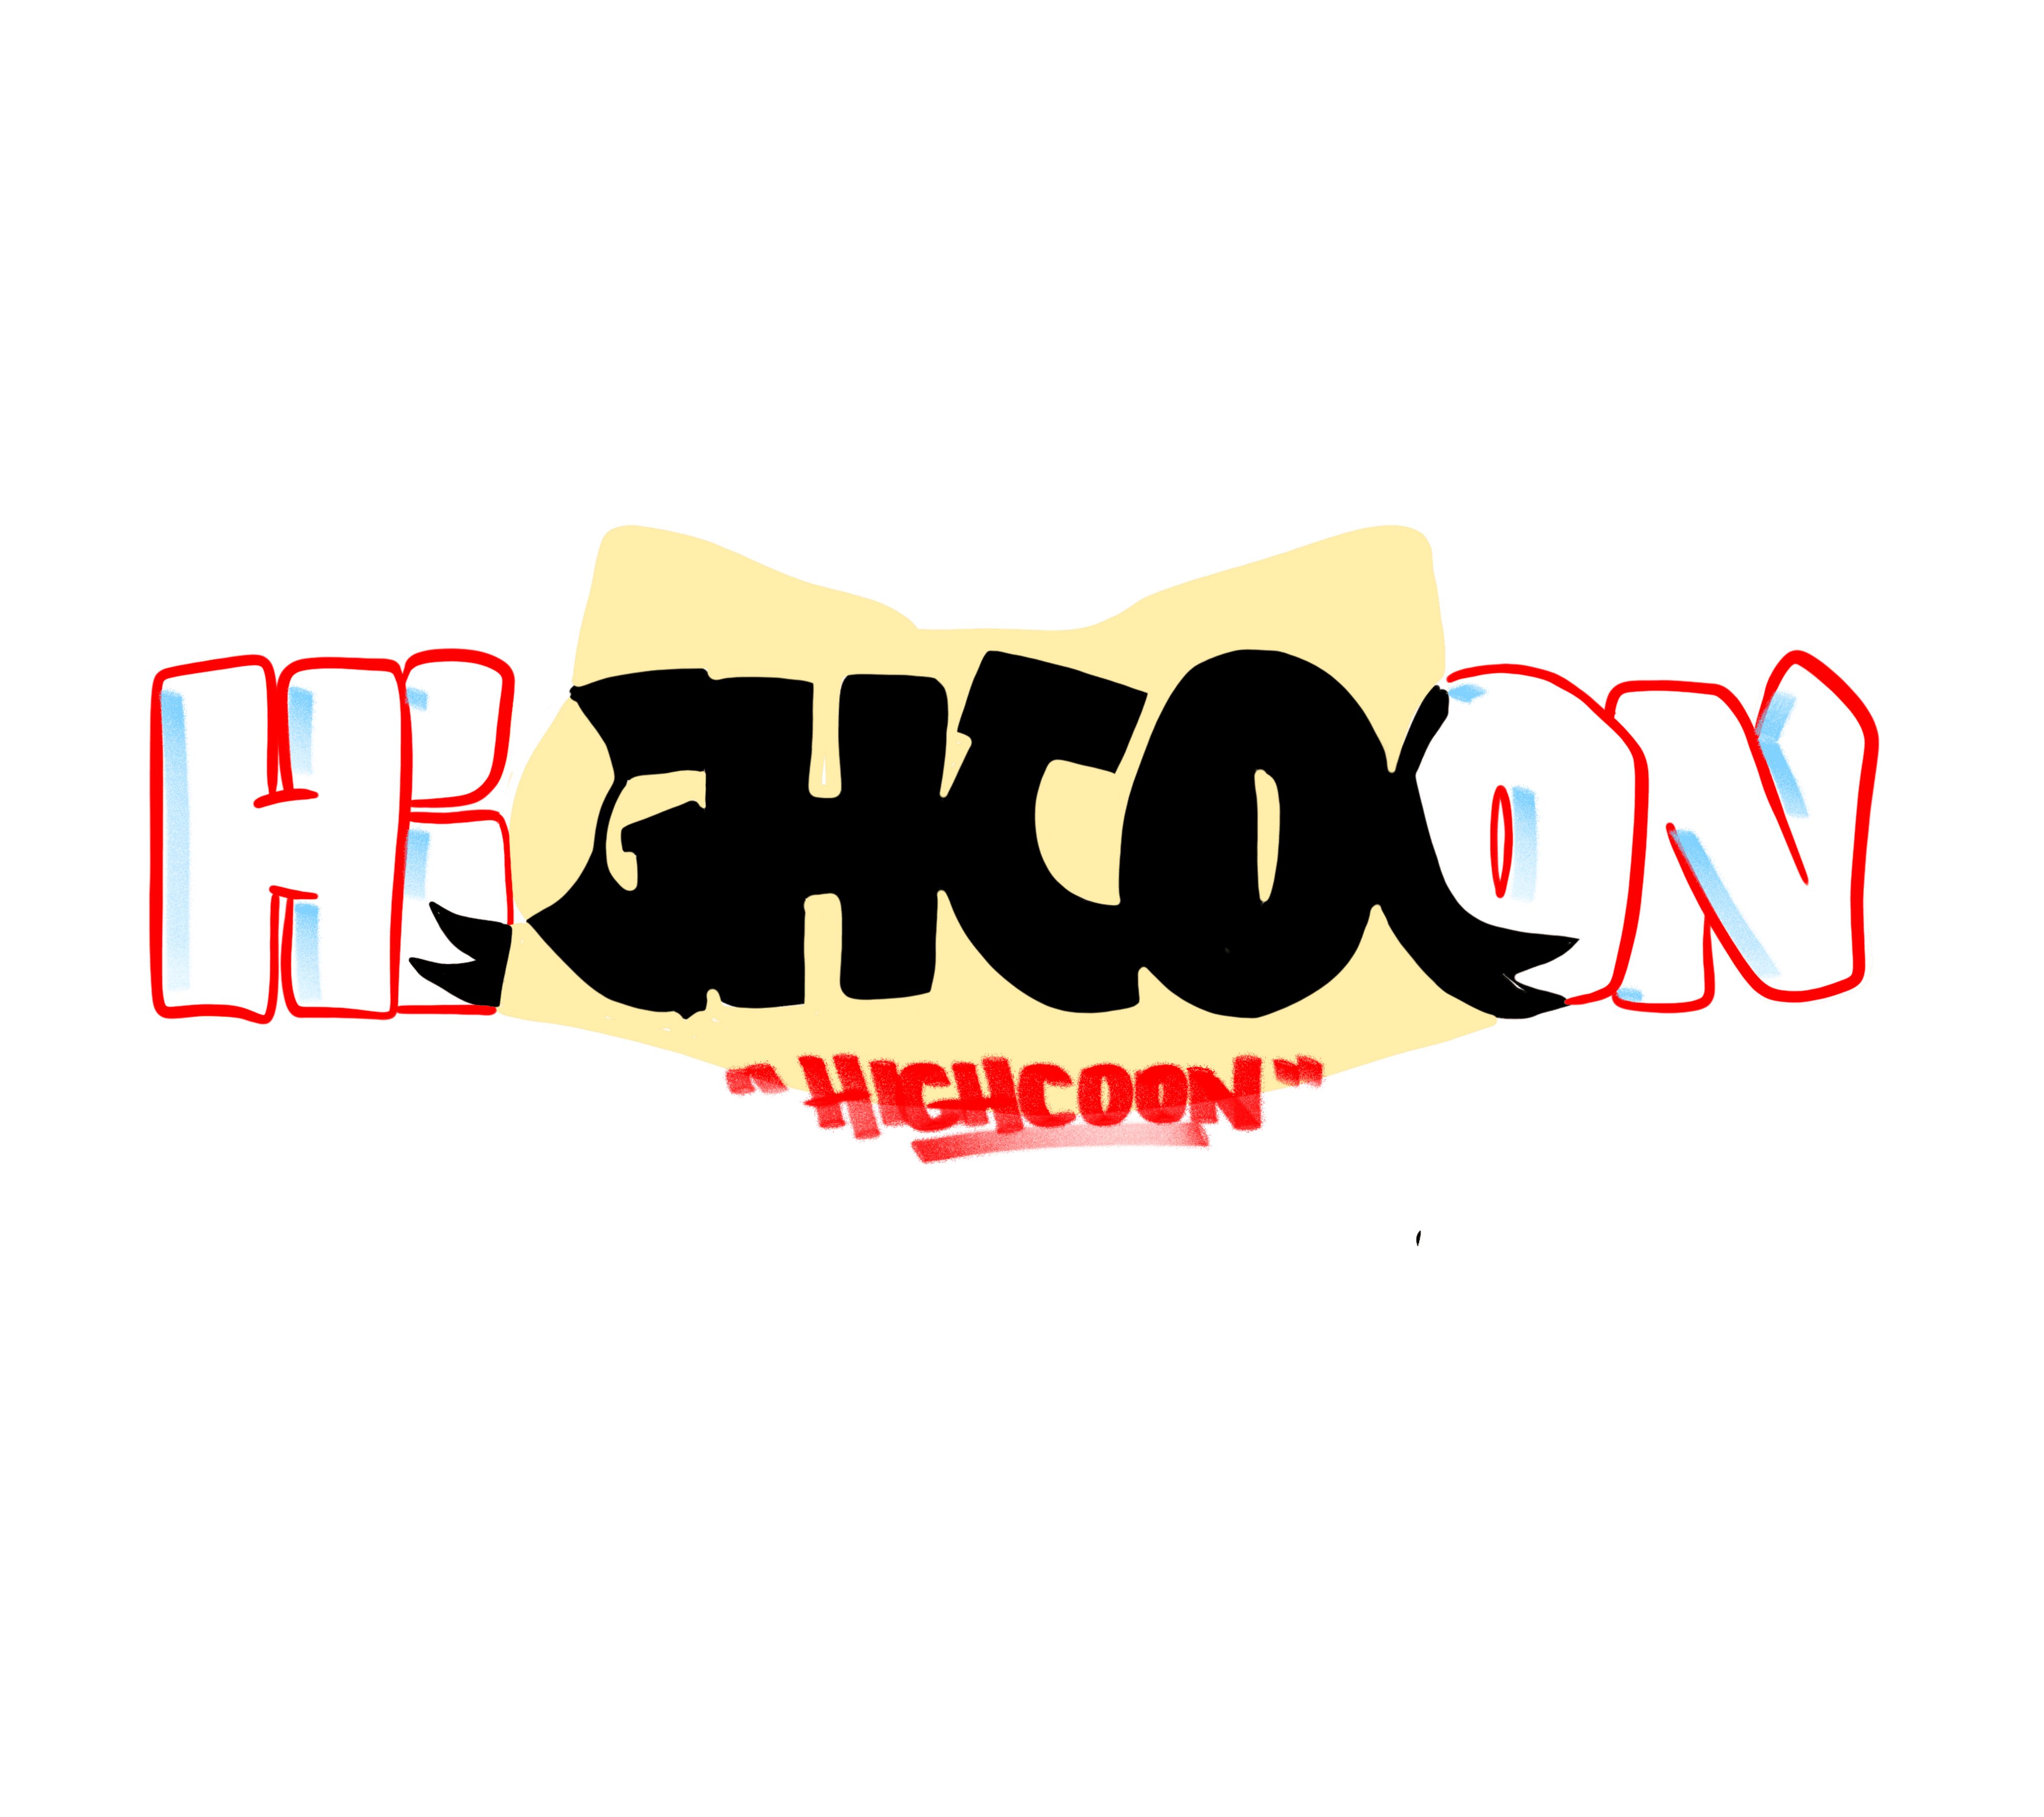 Highcoon_Vault banner